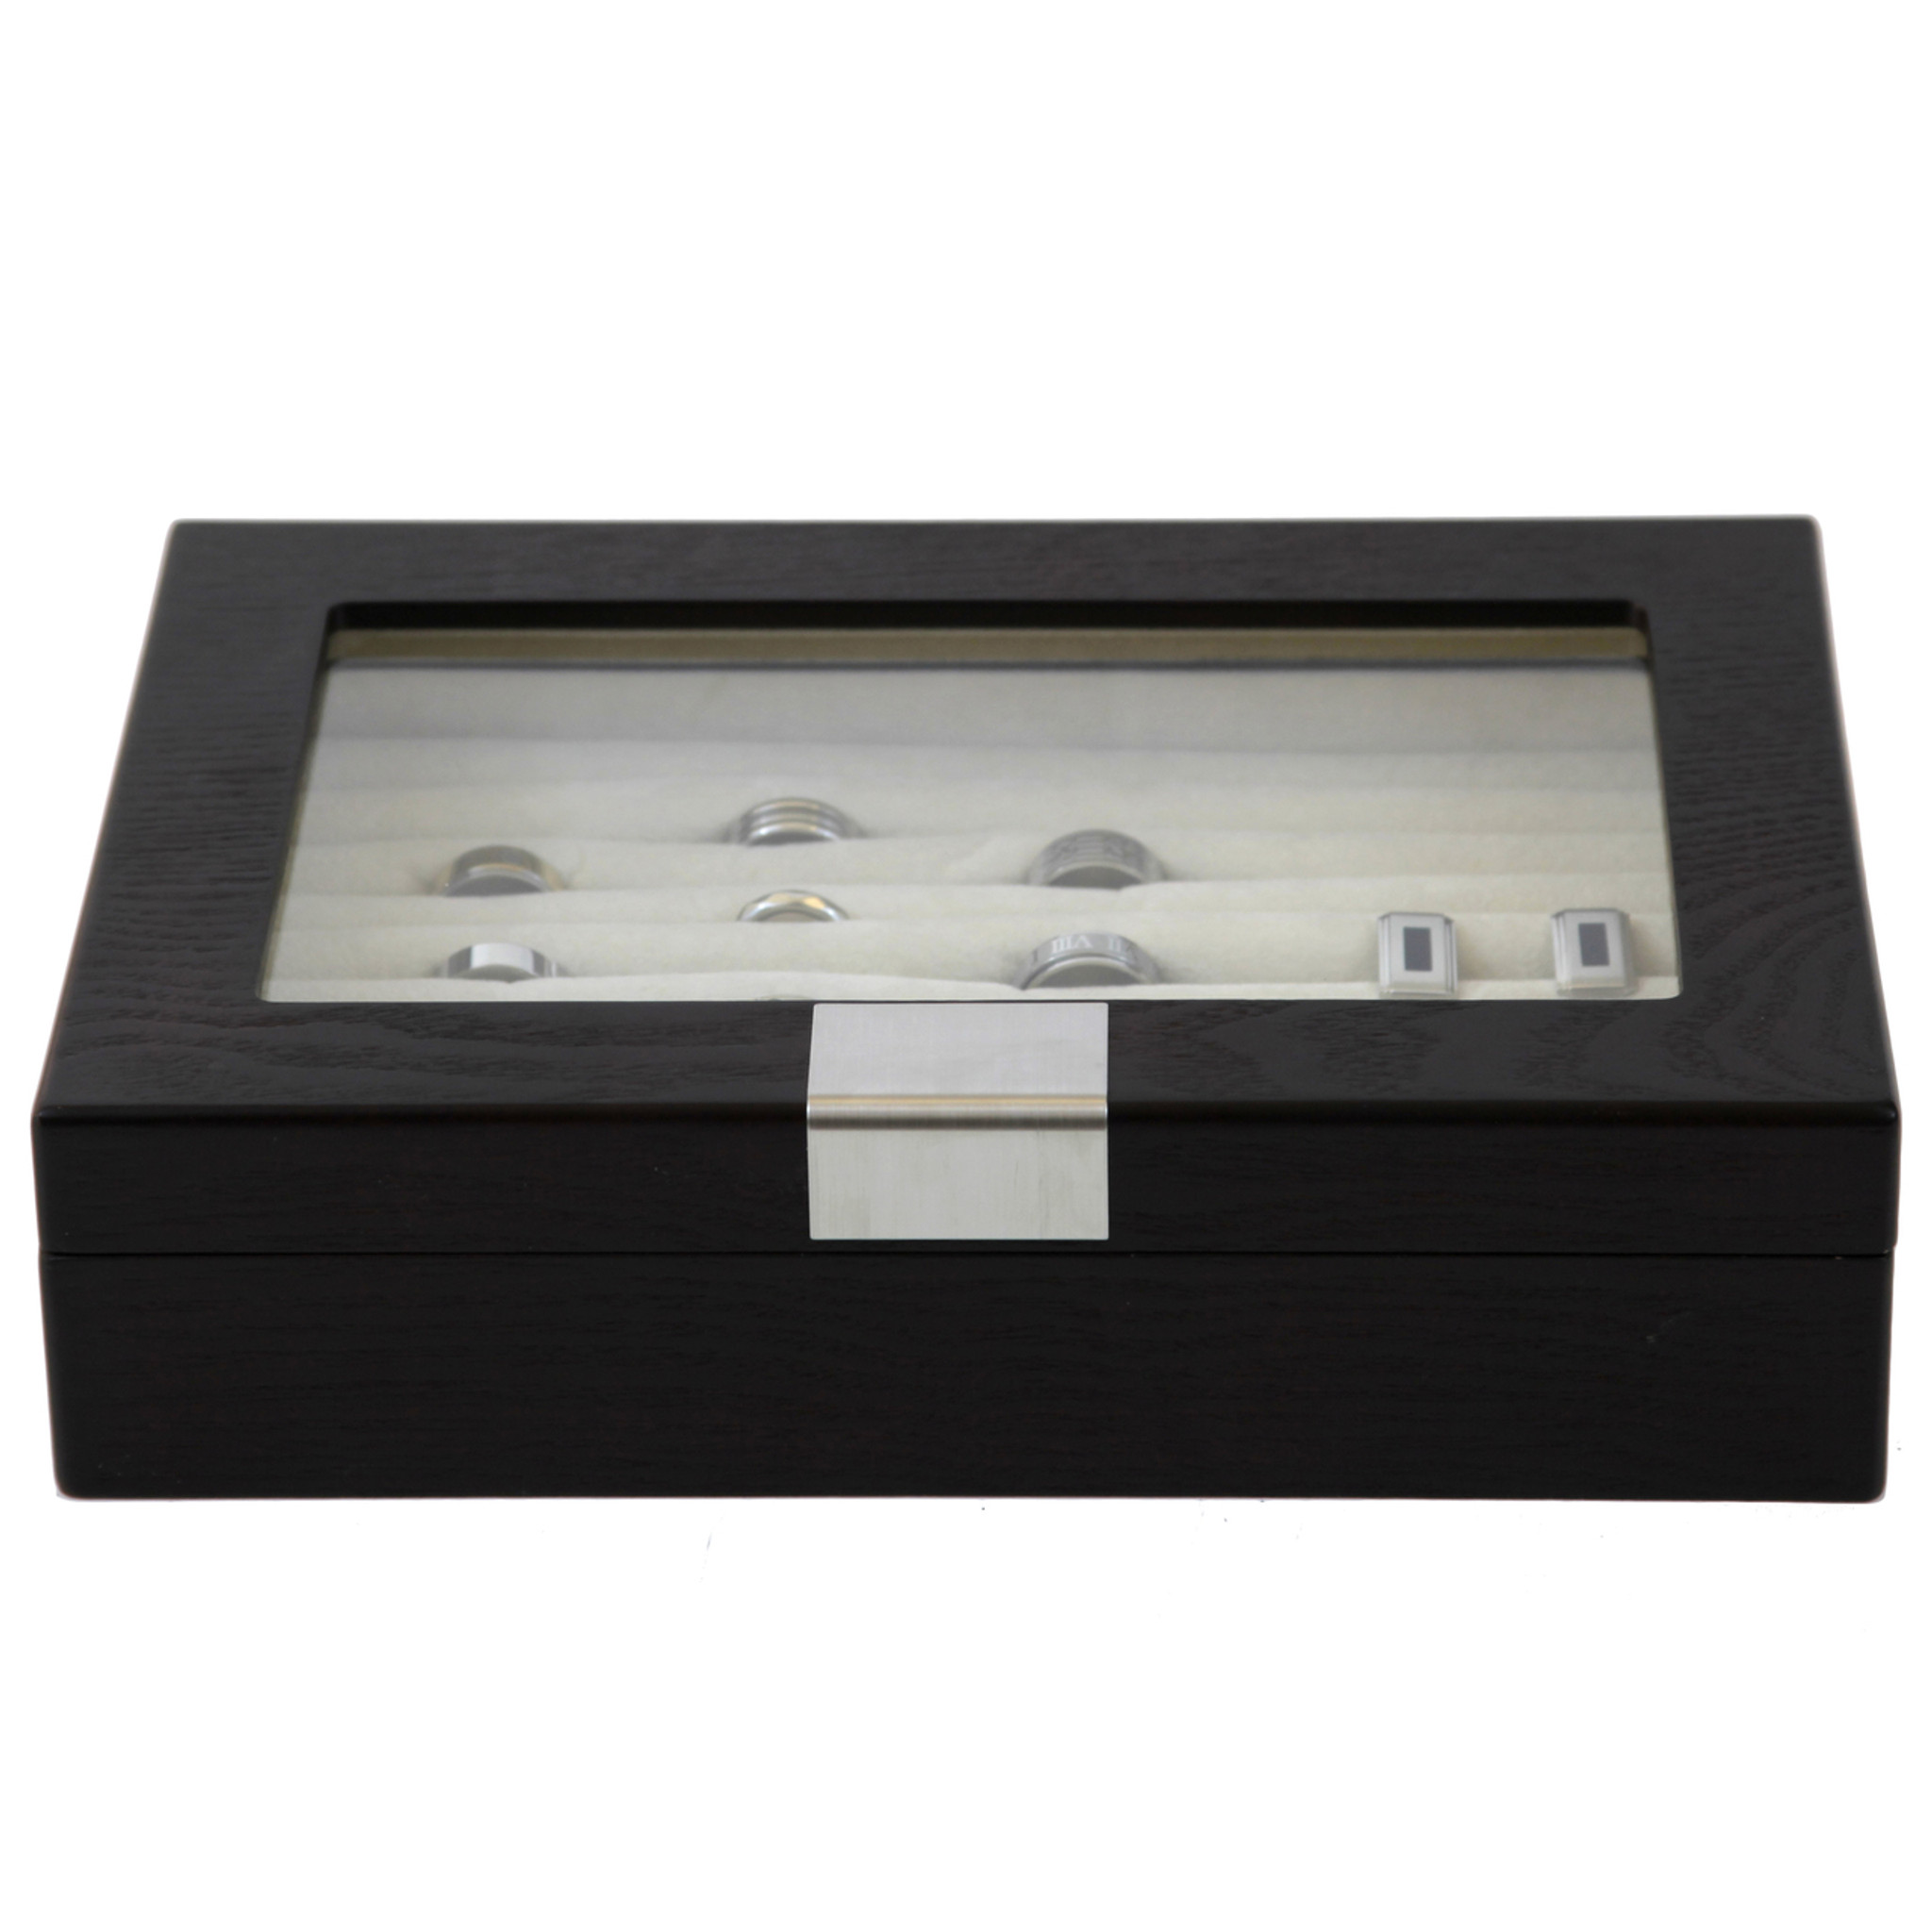 Black & Silver-Tone Wooden Tie Box